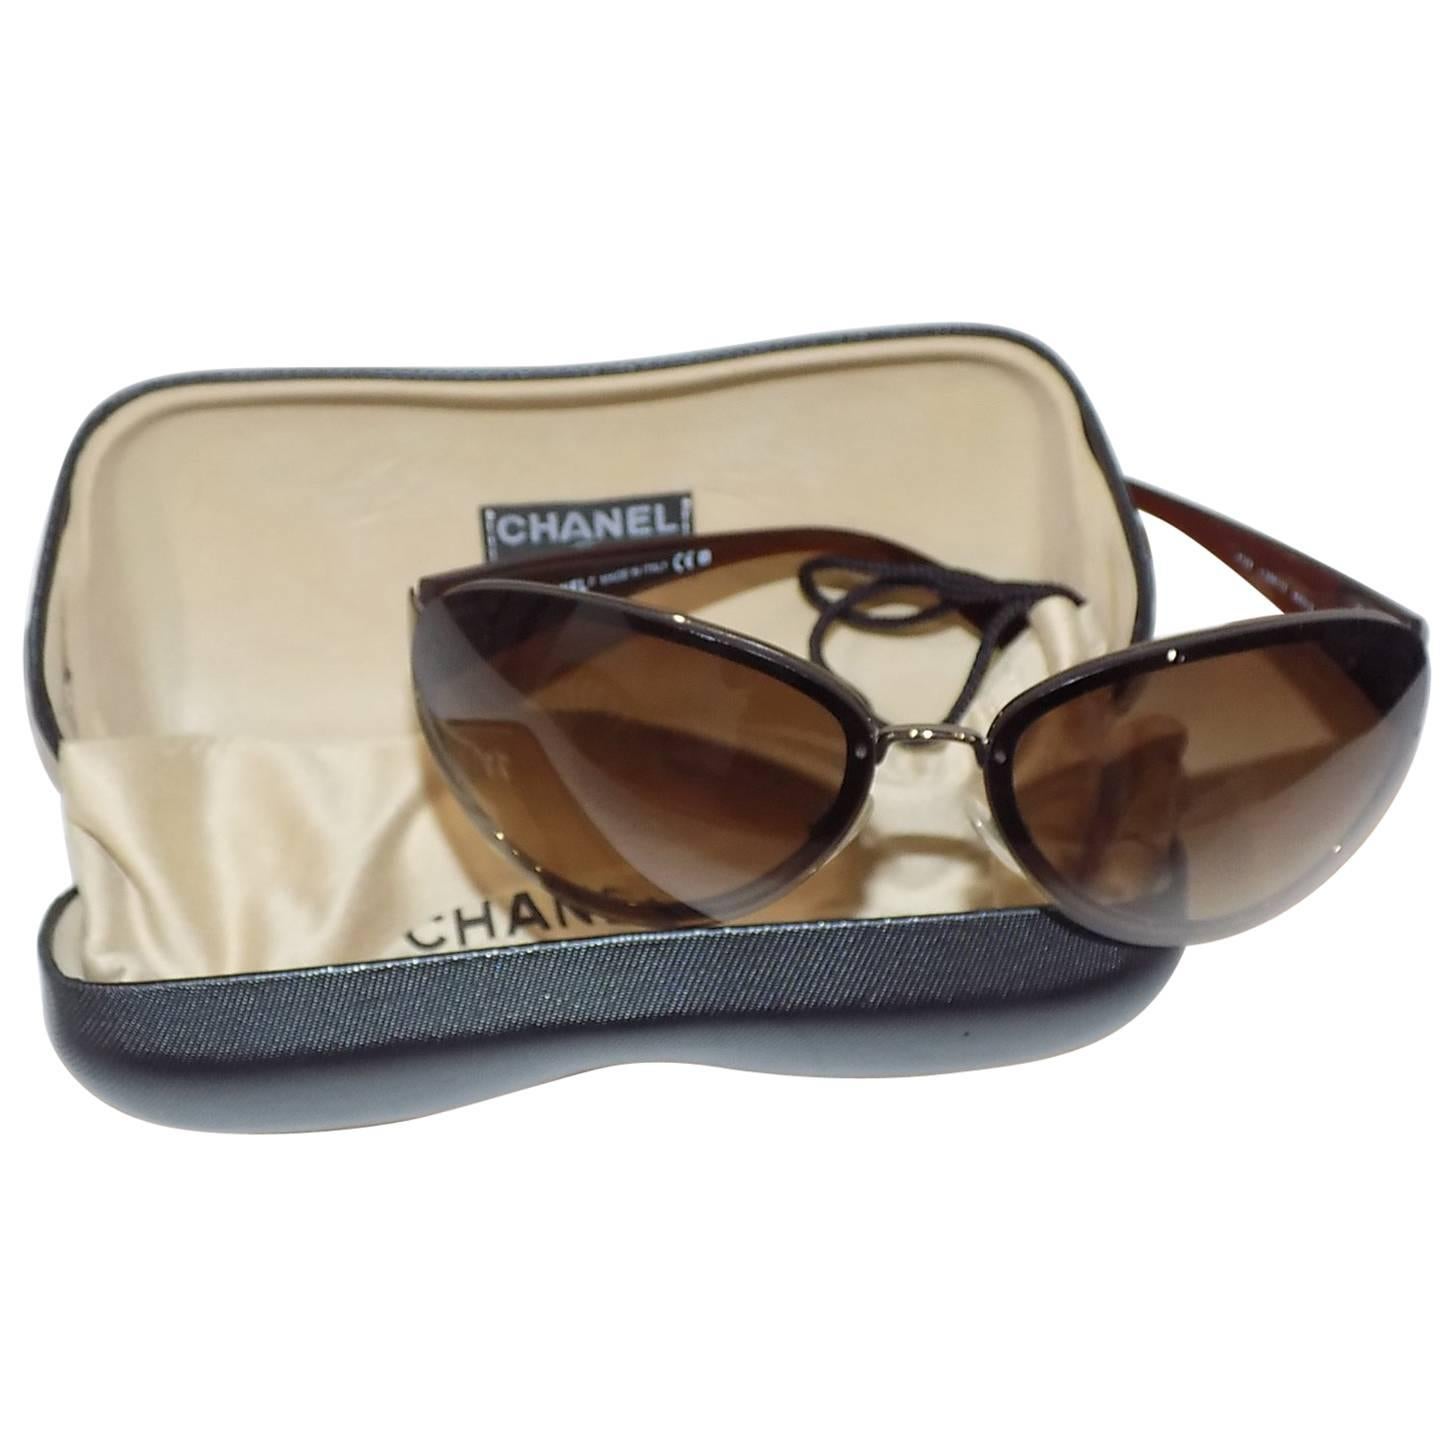 Chanel Sunglasses in Case